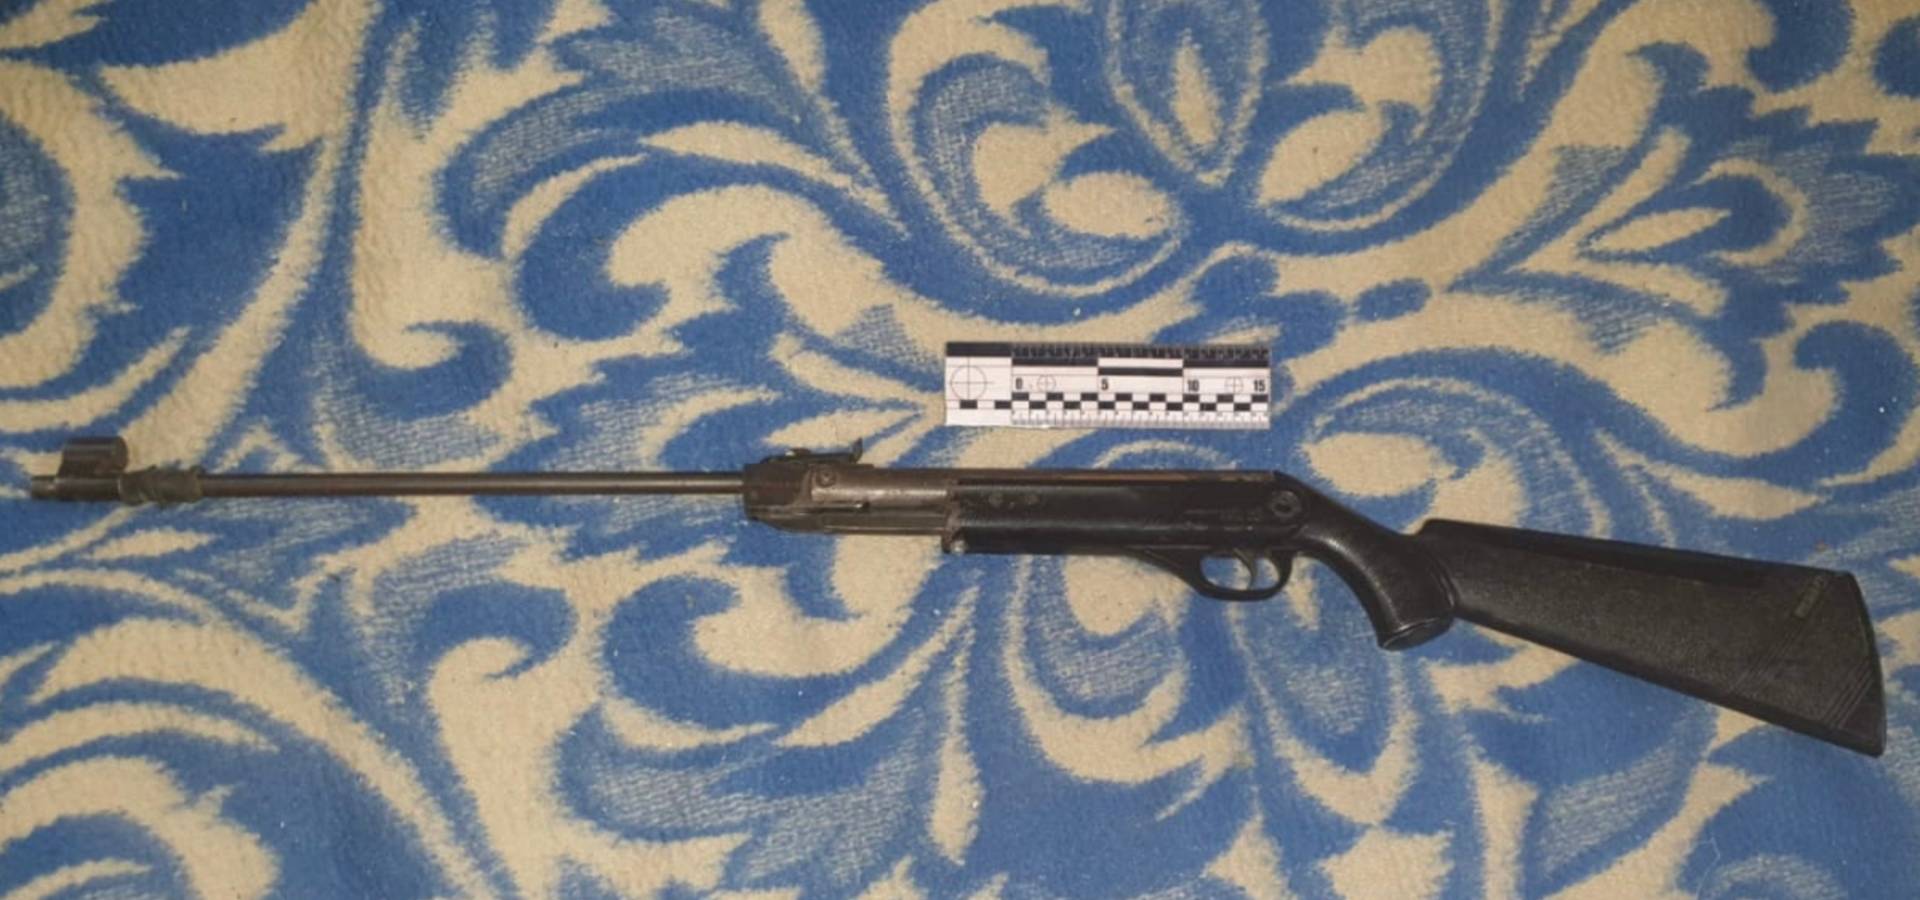 Житель Хмільницького району незаконно зберігав гвинтівку. Чоловікові загрожує покарання